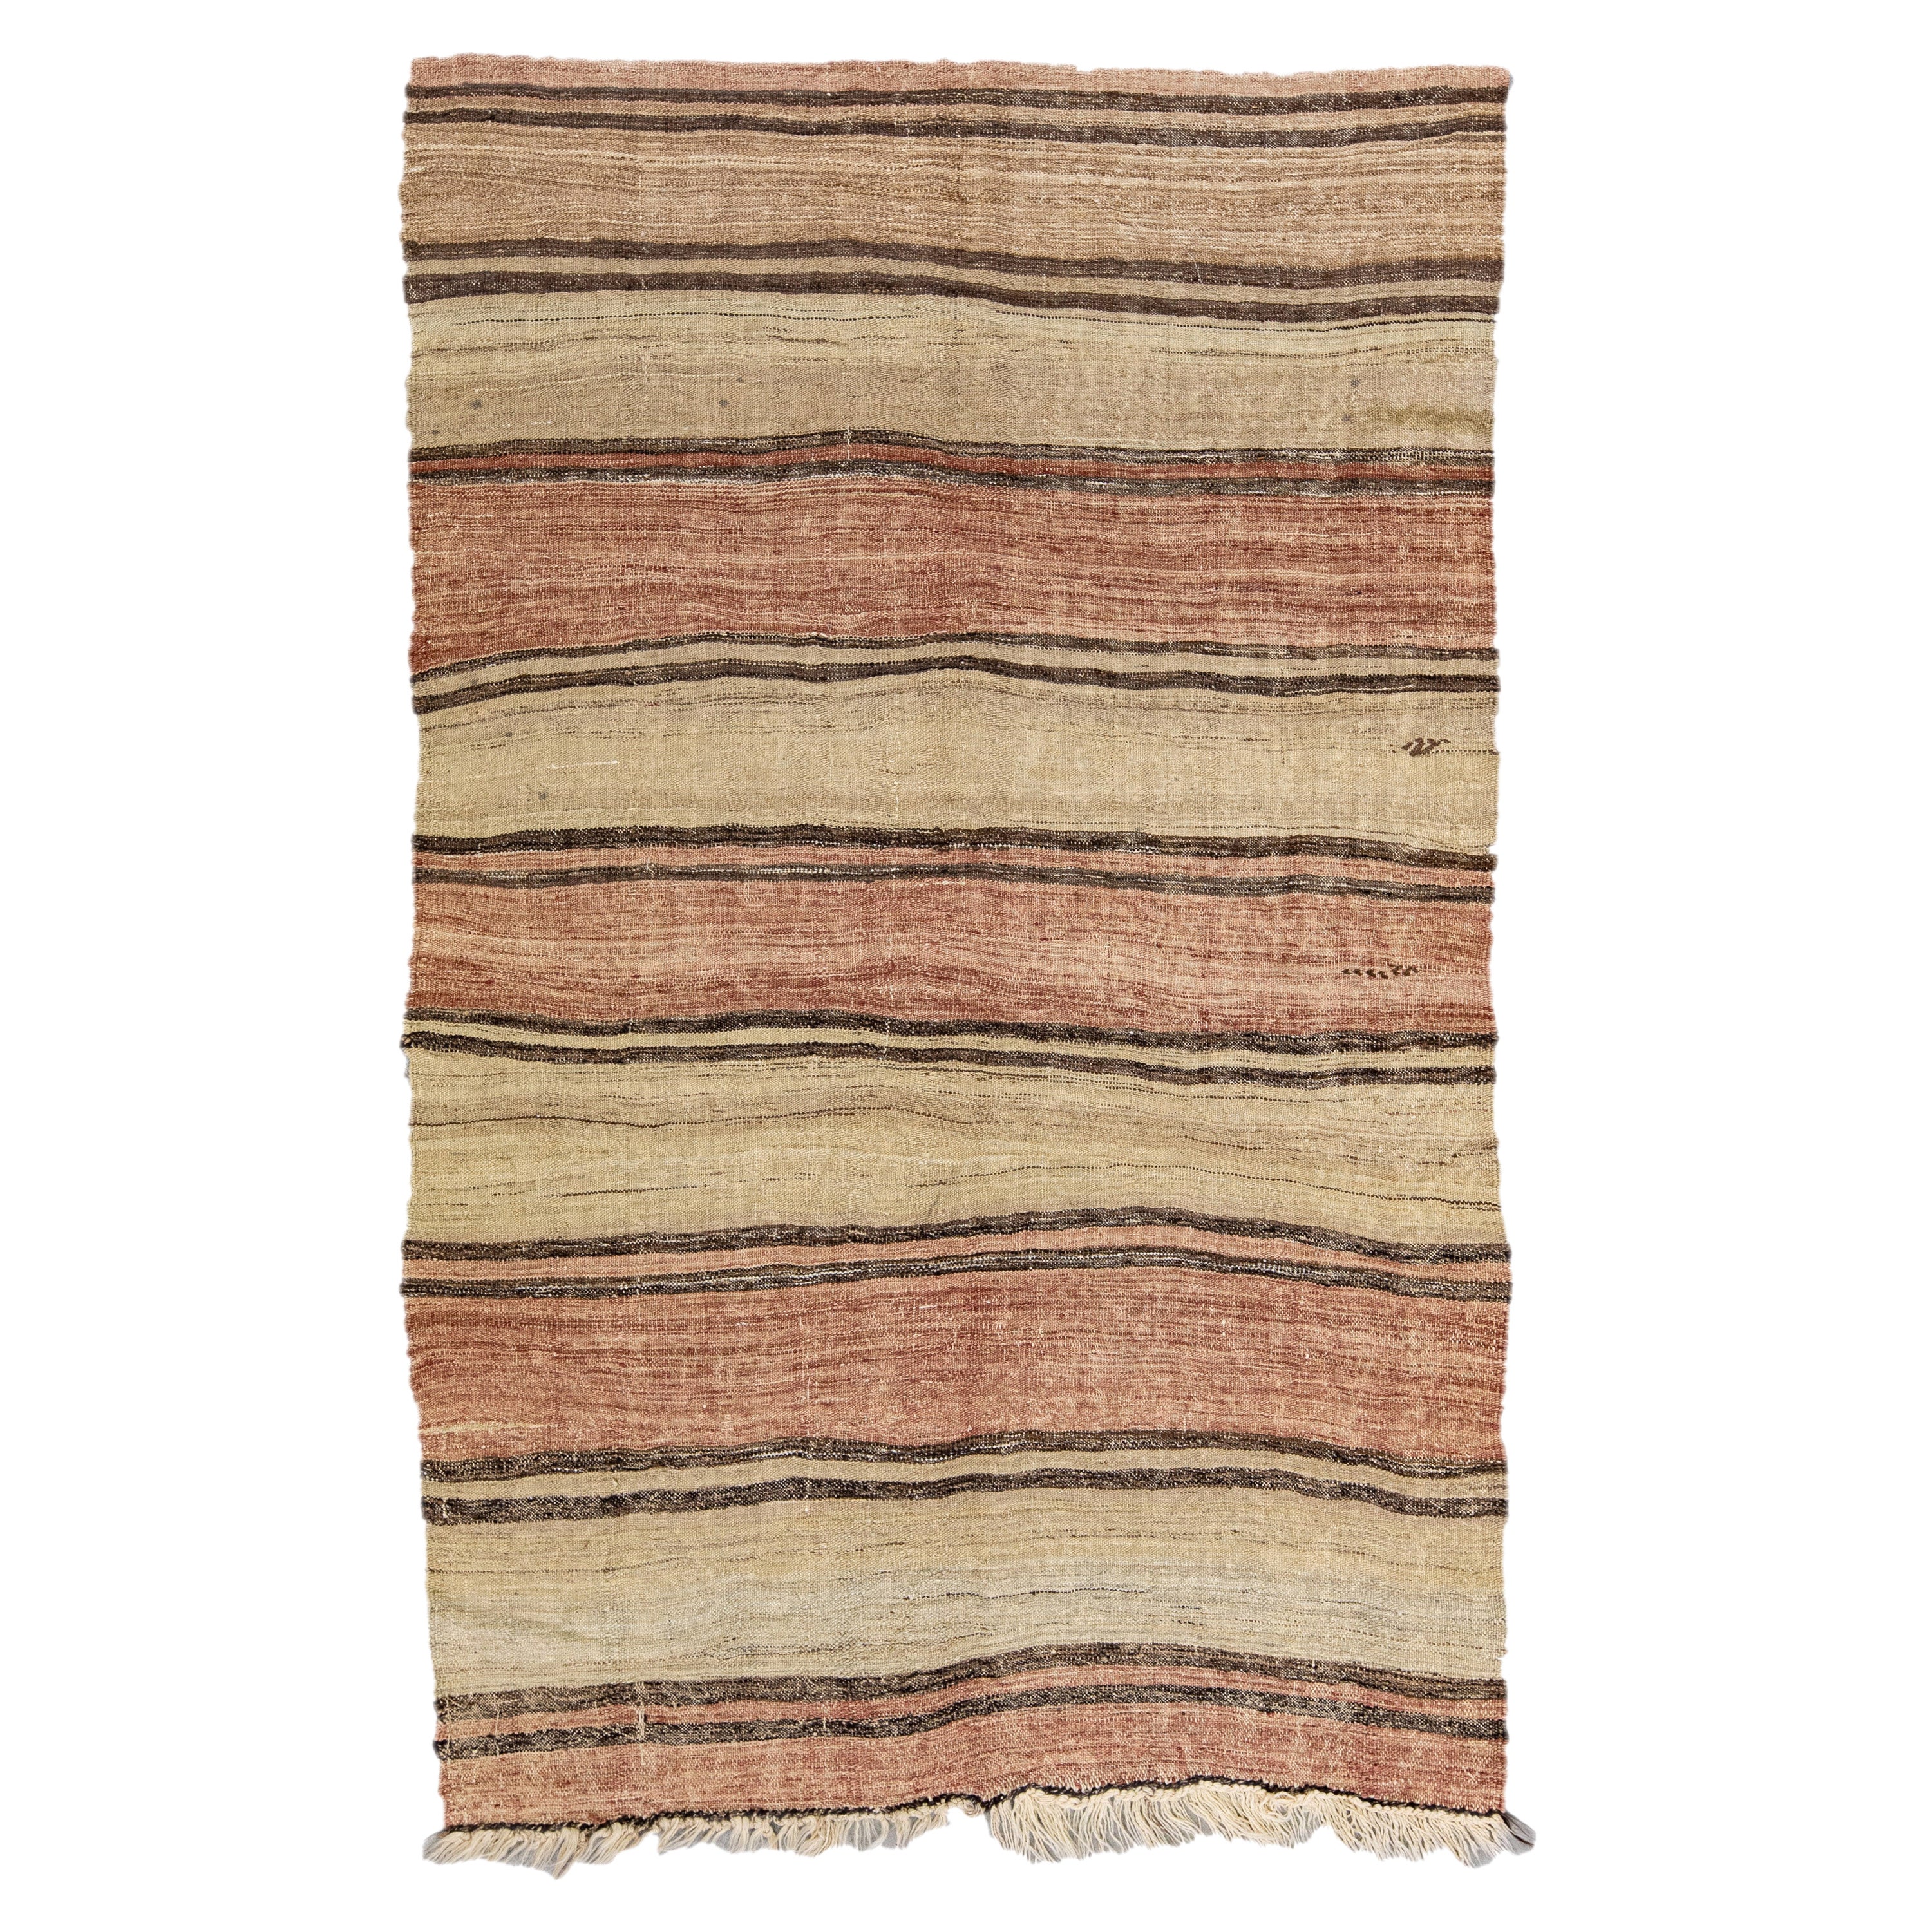 Tapis Kilim vintage en laine à motifs rayés, tissé à la main à plat, brun clair